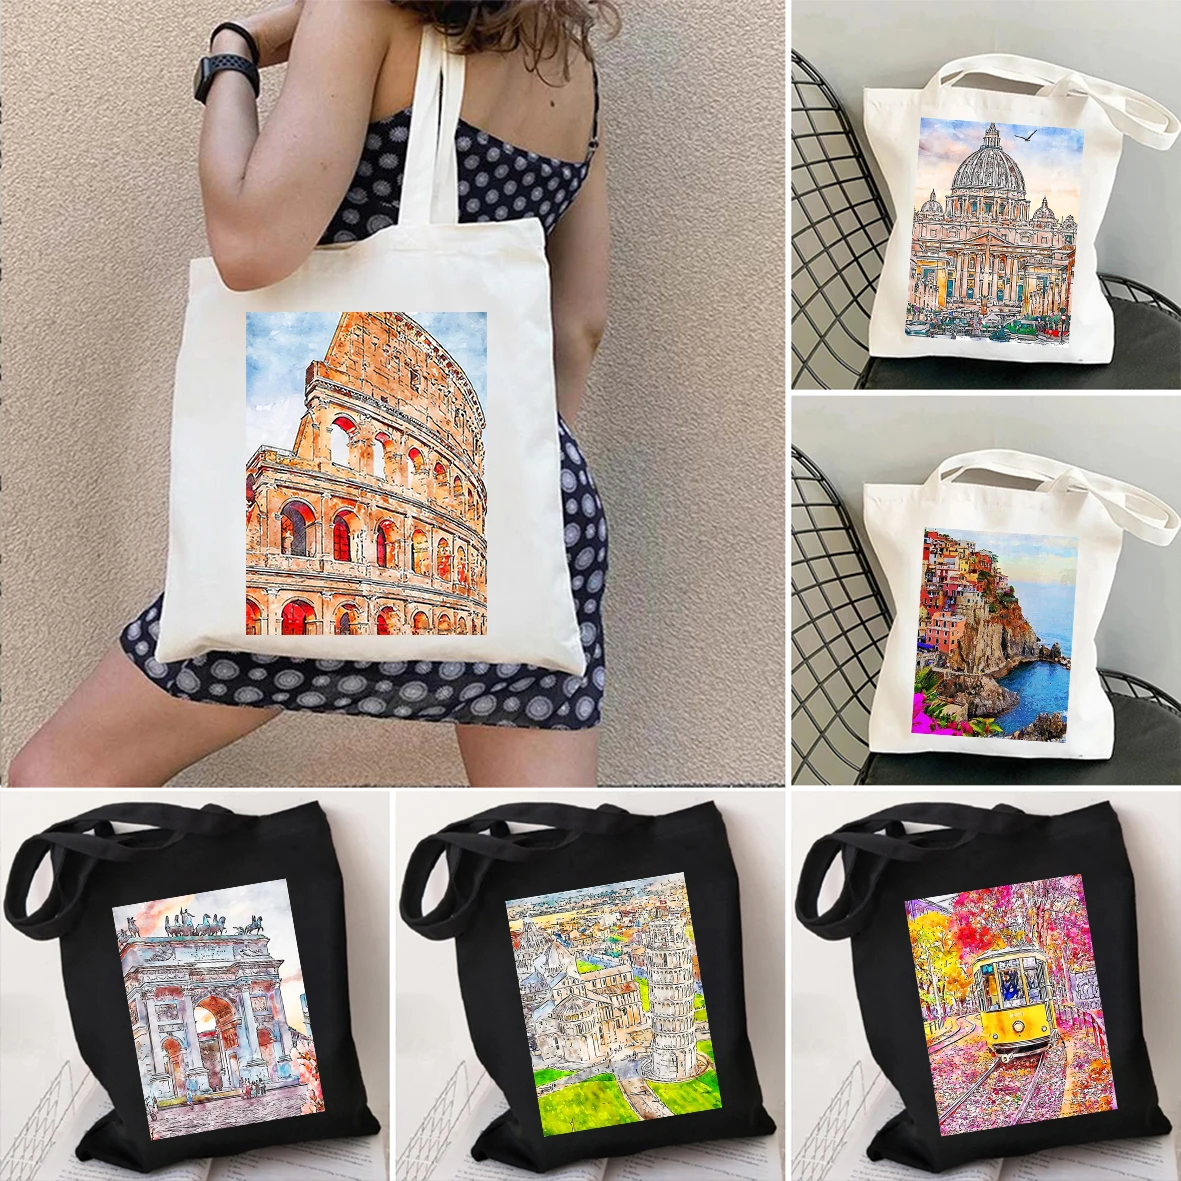 Duomo cloth handbag